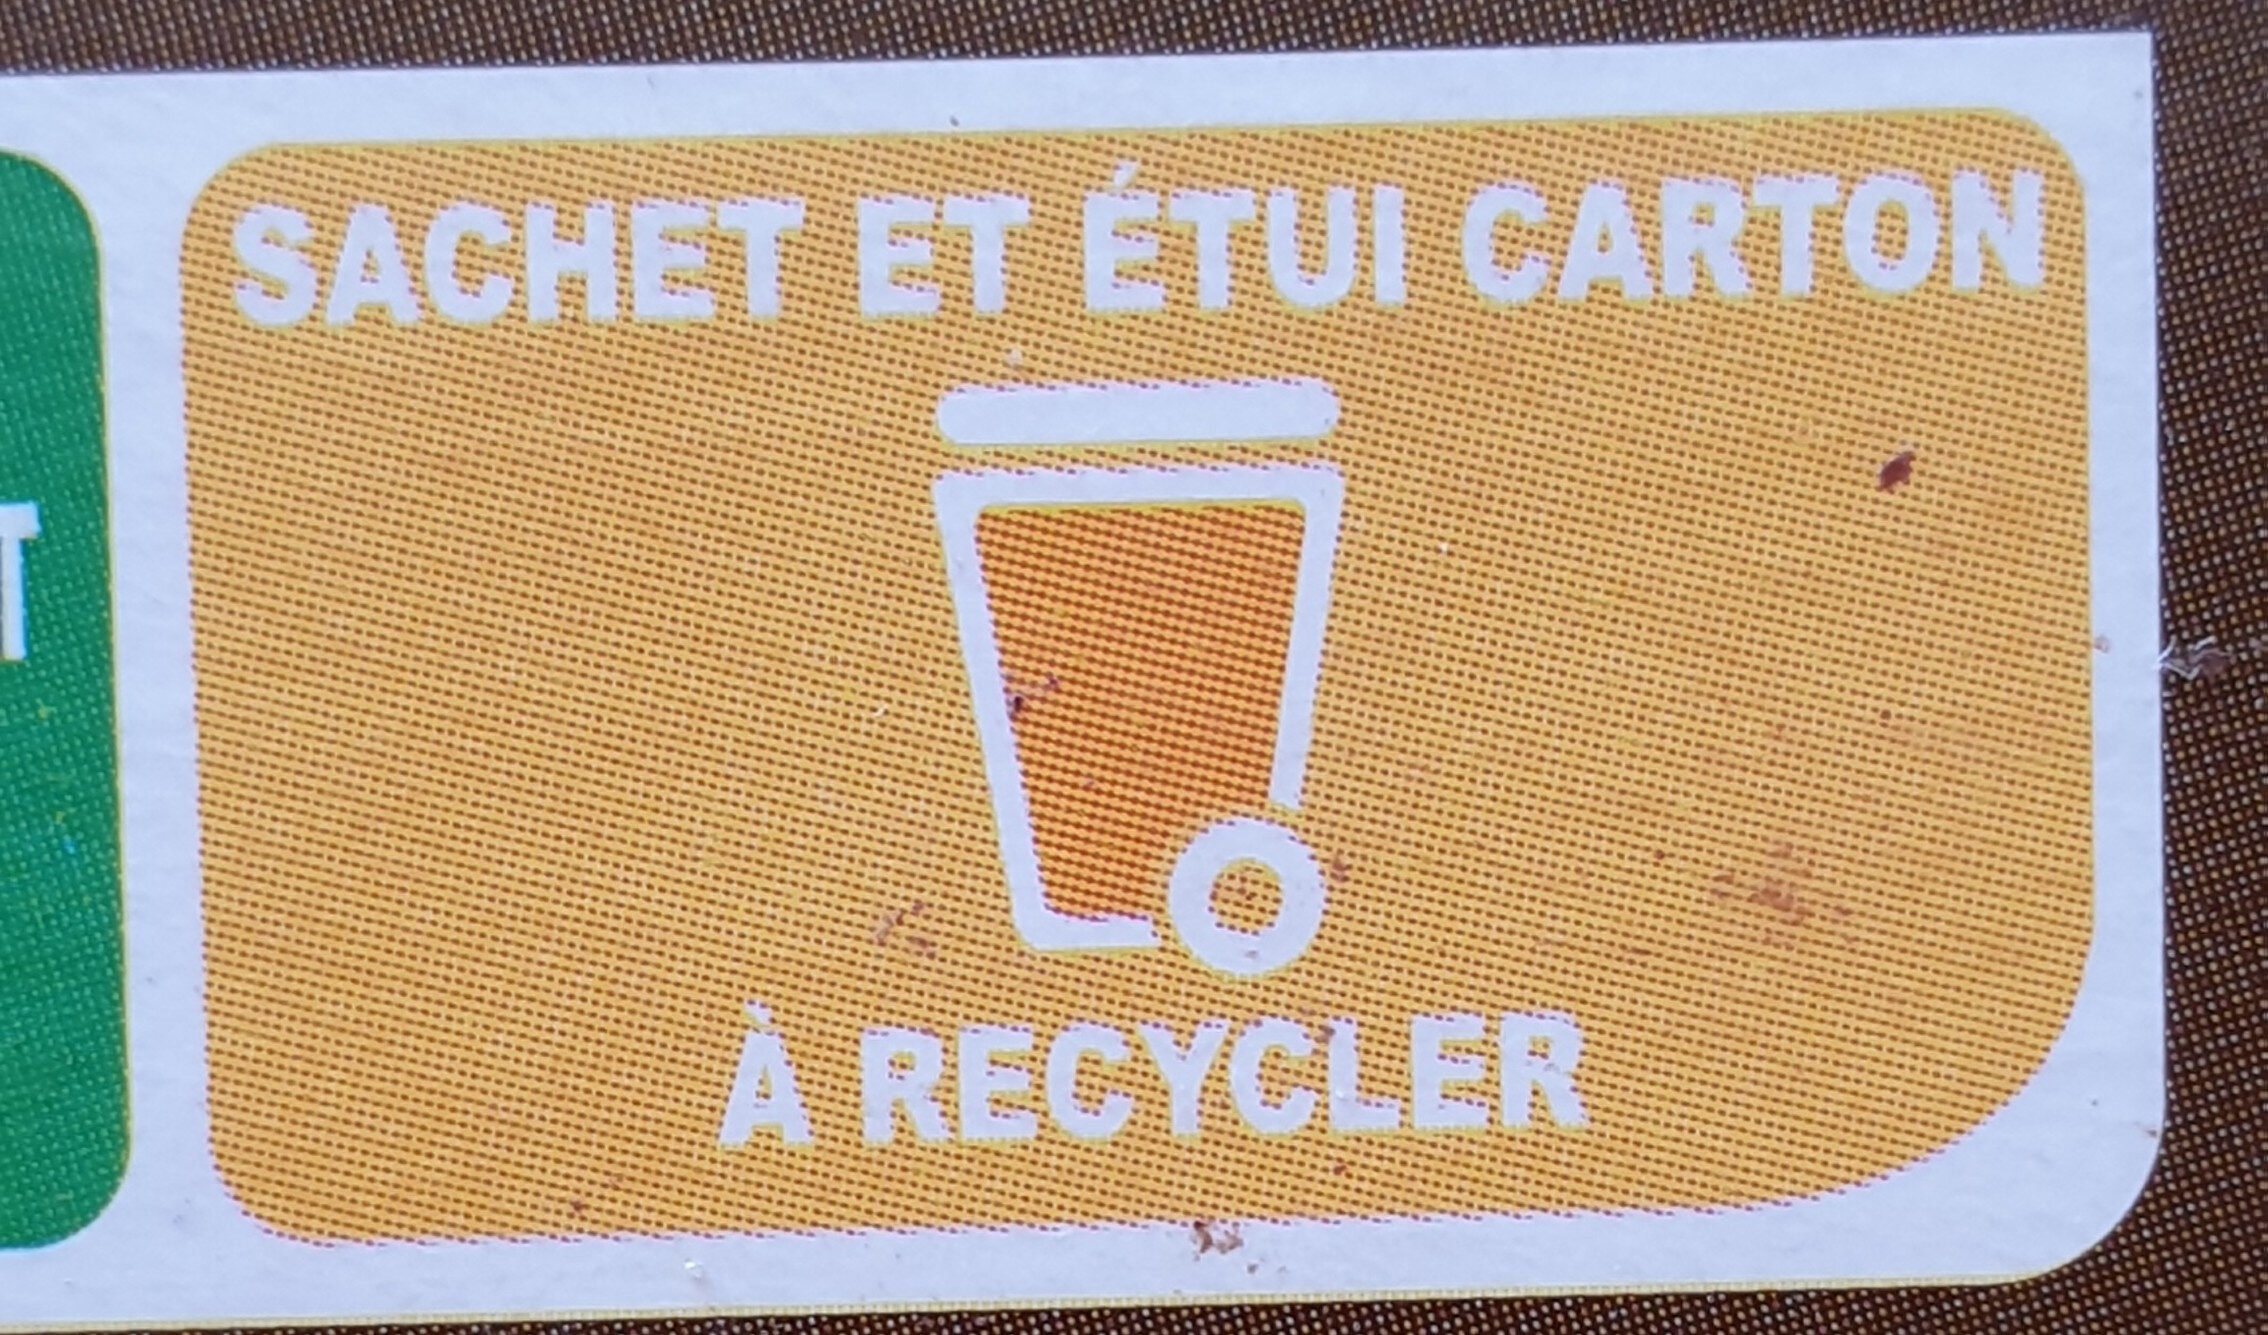 L'Original - Cacao en poudre non sucré - Instrukcje dotyczące recyklingu i / lub informacje na temat opakowania - fr